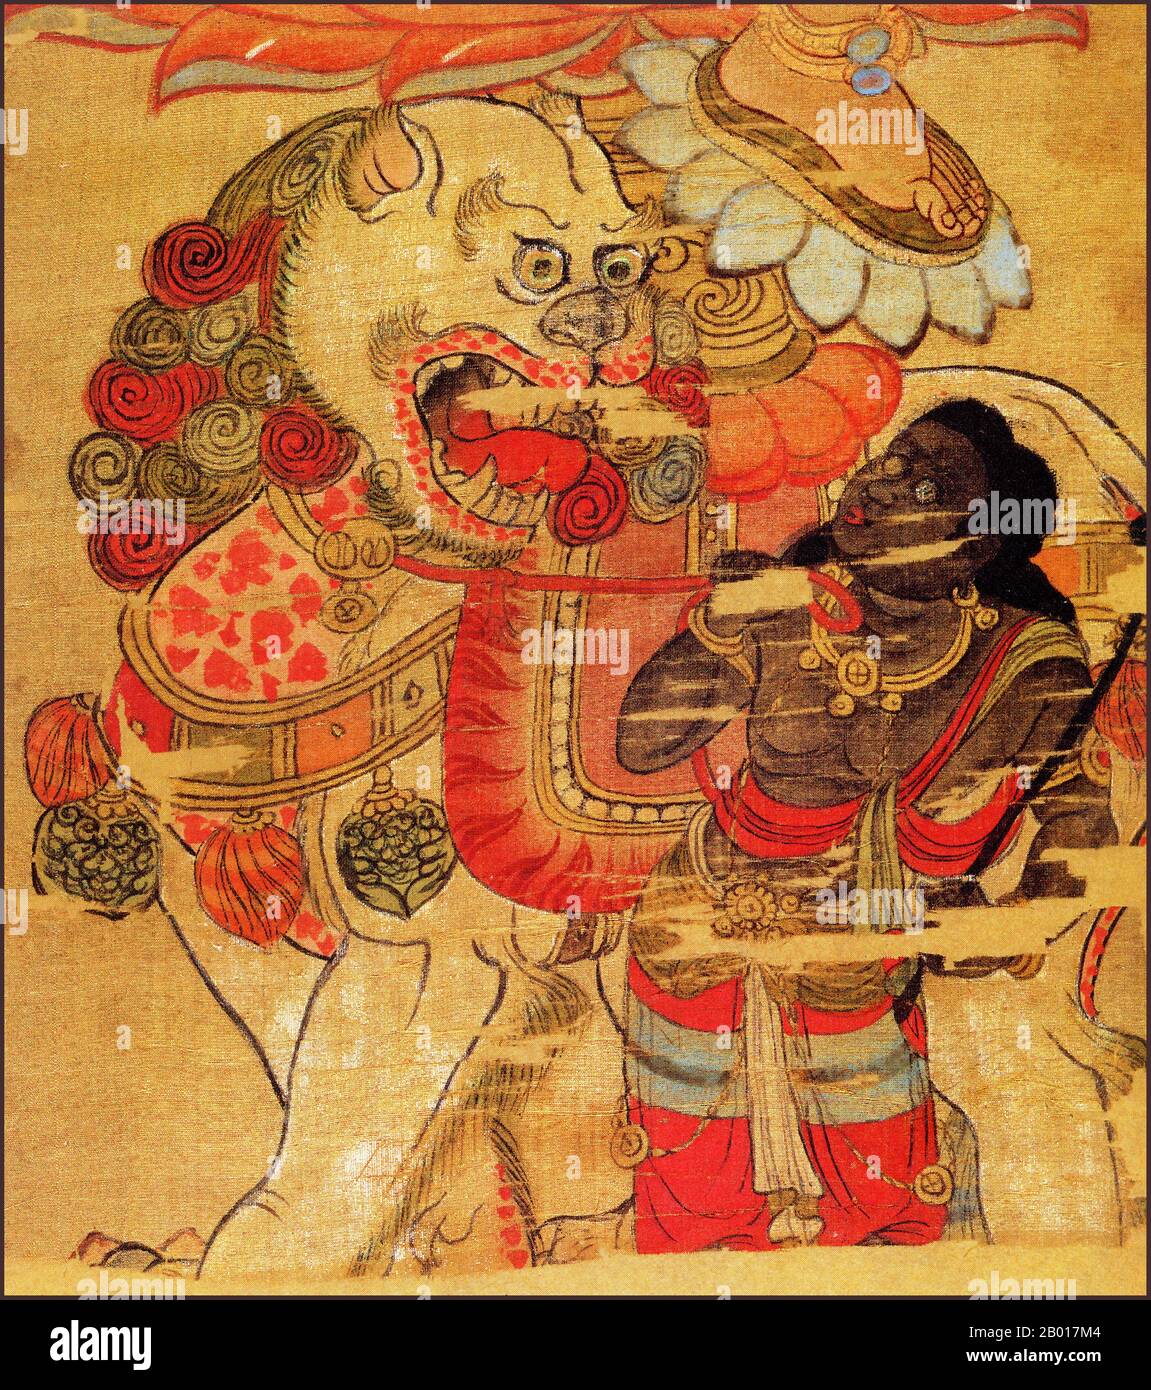 Chine: Détail d'un dessin suspendu de la Bodhisattva Manjusri des Grottes de Mogao, Dunhuang, 9th siècle ce.Mañjuśrī est décrit comme un bodhisattva mâle brandissant une épée flamboyante dans sa main droite, représentant la réalisation de la sagesse transcendante qui réduit l'ignorance et la dualité.L'écriture soutenue par le lotus tenu dans sa main gauche est un Prajñāpāramitā sūtra, représentant son accomplissement de réalisation ultime de la floraison de la sagesse.Mañjuśrī est souvent représenté comme étant sur un lion bleu, ou assis sur la peau d'un lion. Banque D'Images